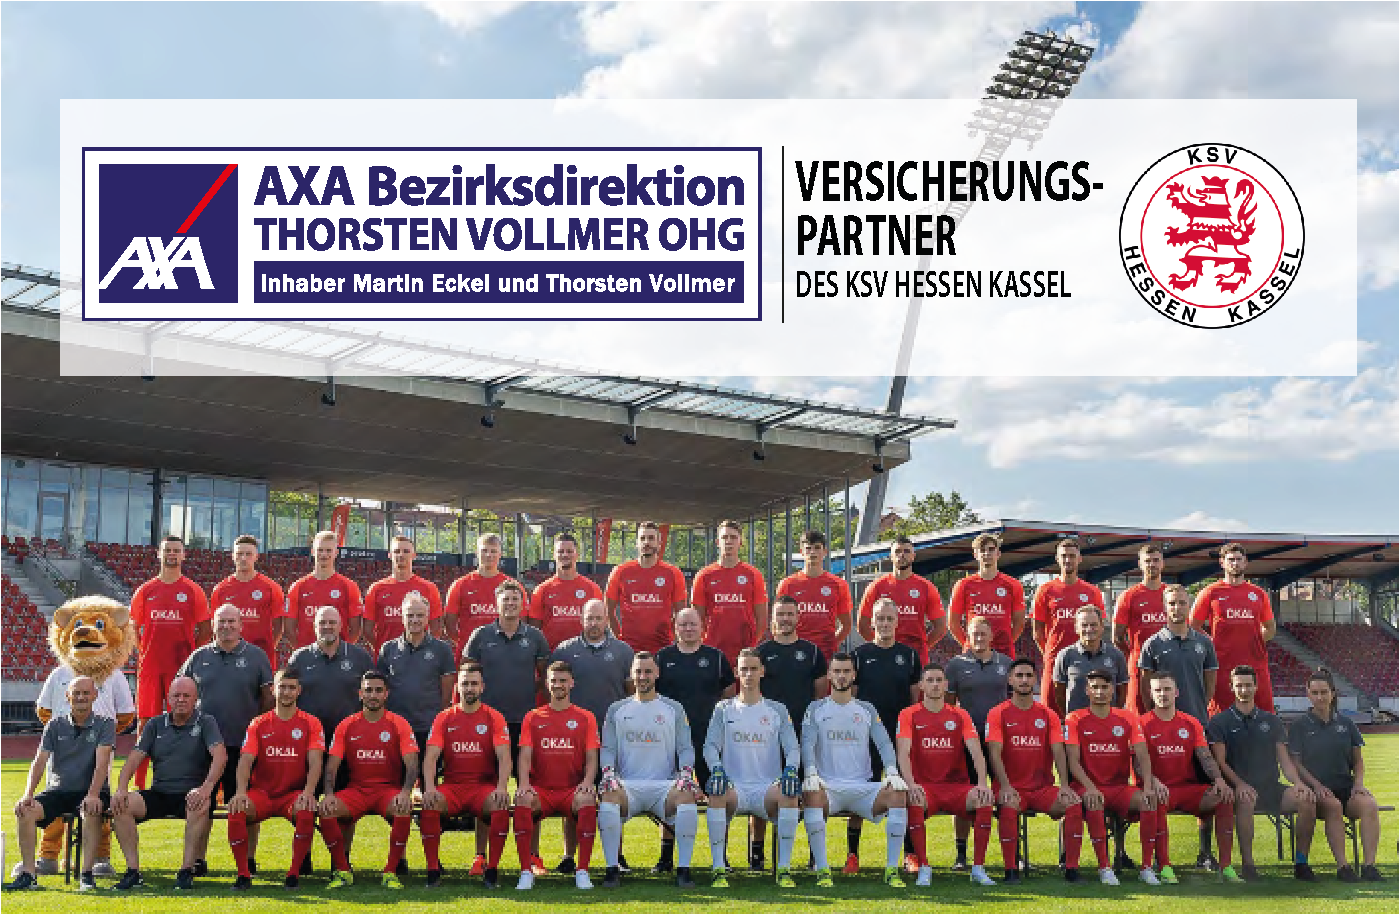 AXA Göttingen Thorsten Vollmer OHG | Sponsoring KSV Hessen Kassel e.V.